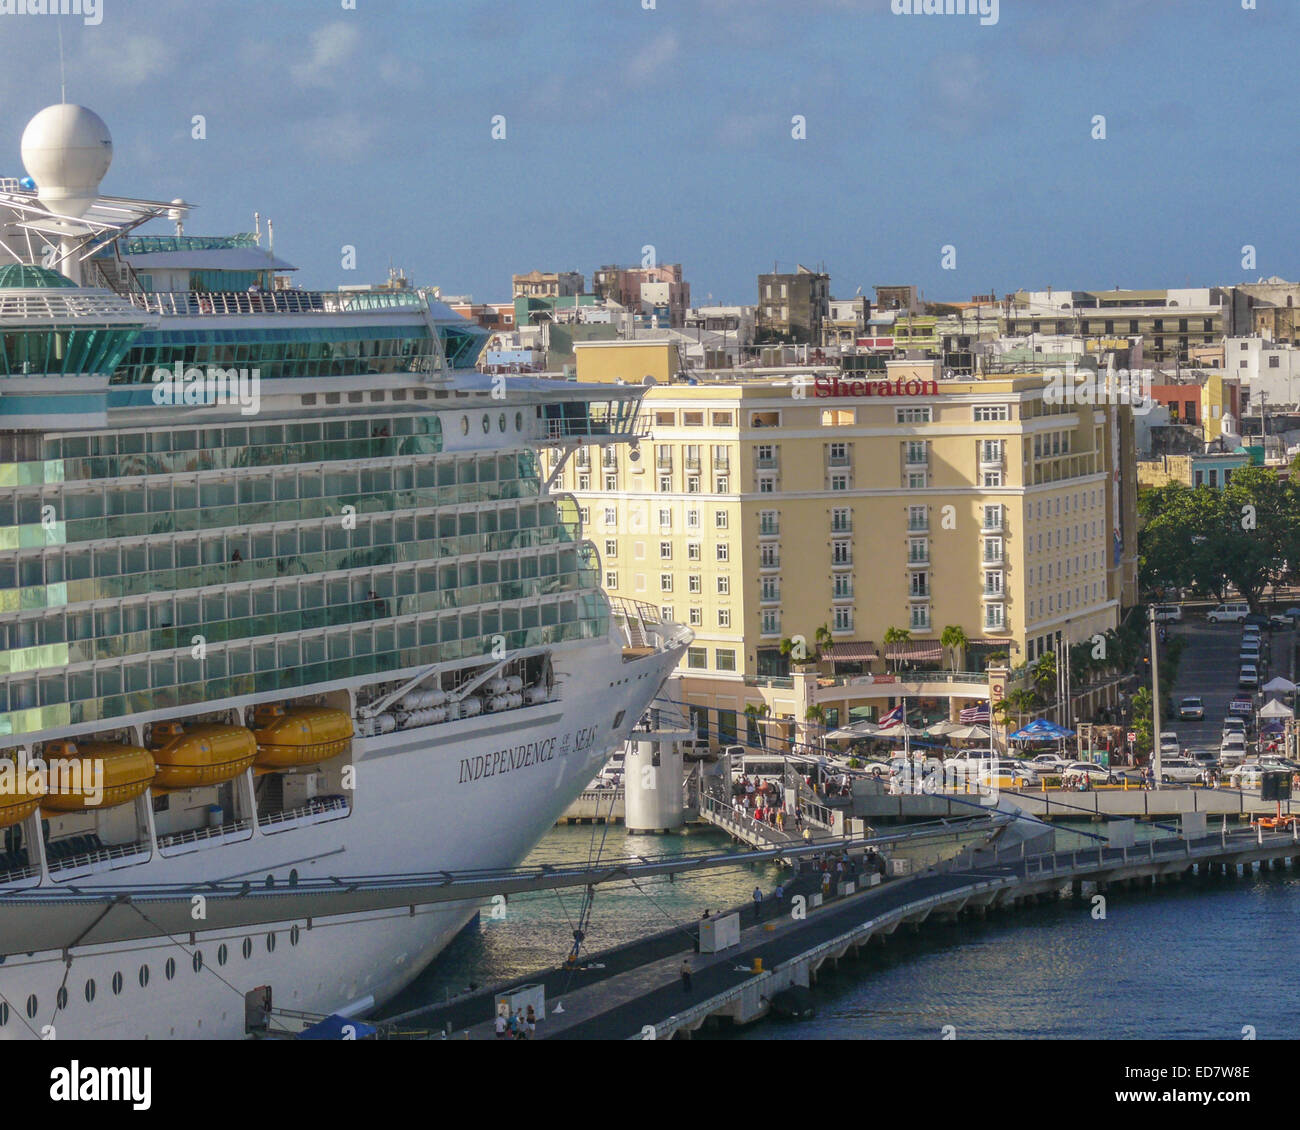 royal caribbean cruise ship puerto rico